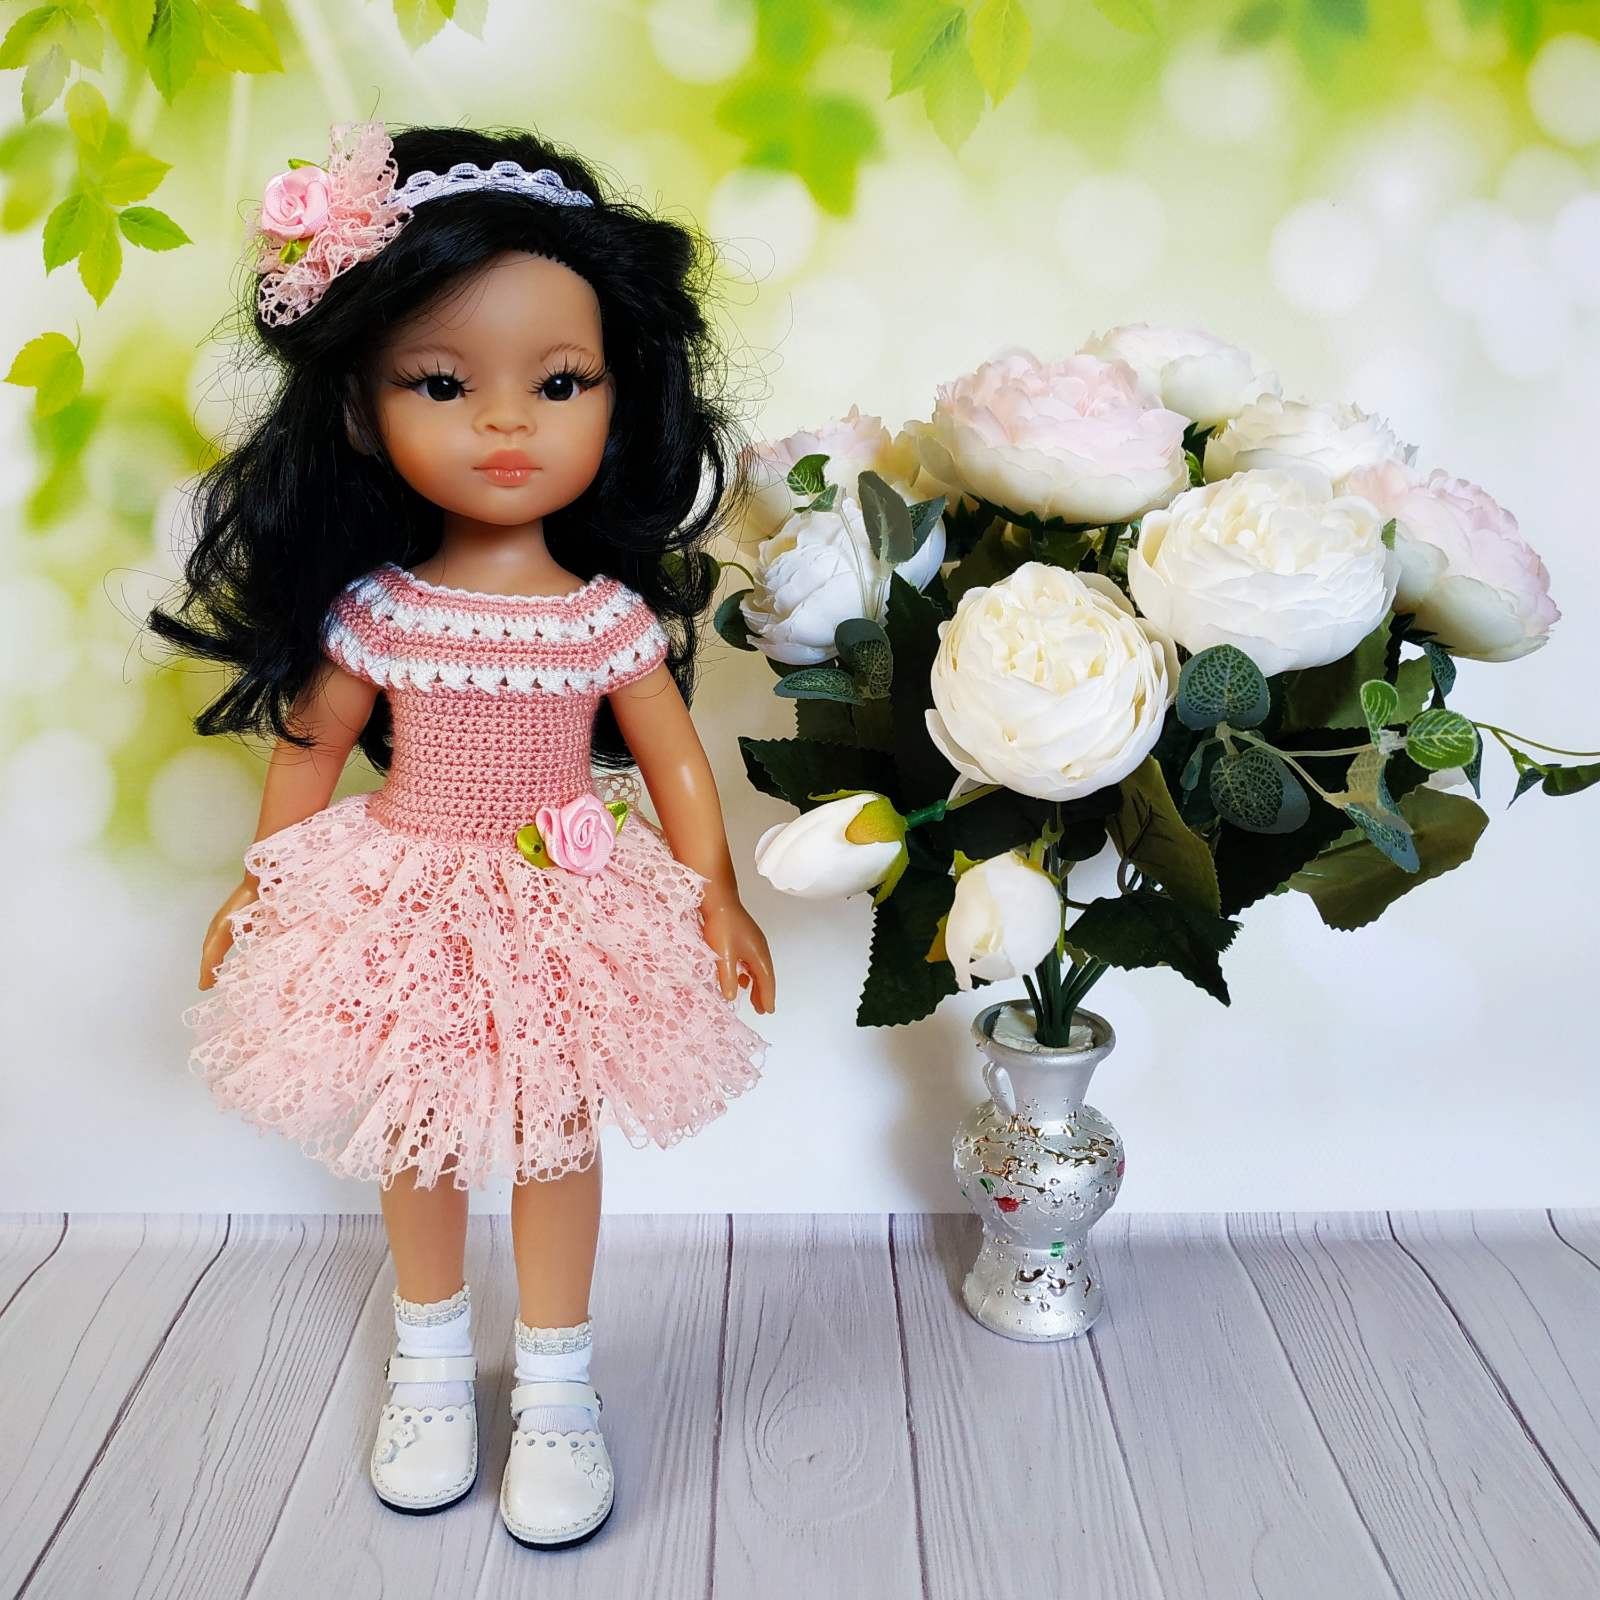 Платье Персик - одежда для куклы Паола Рейна, 32 см Paola Reina HM-TV-1024 #Tiptovara#